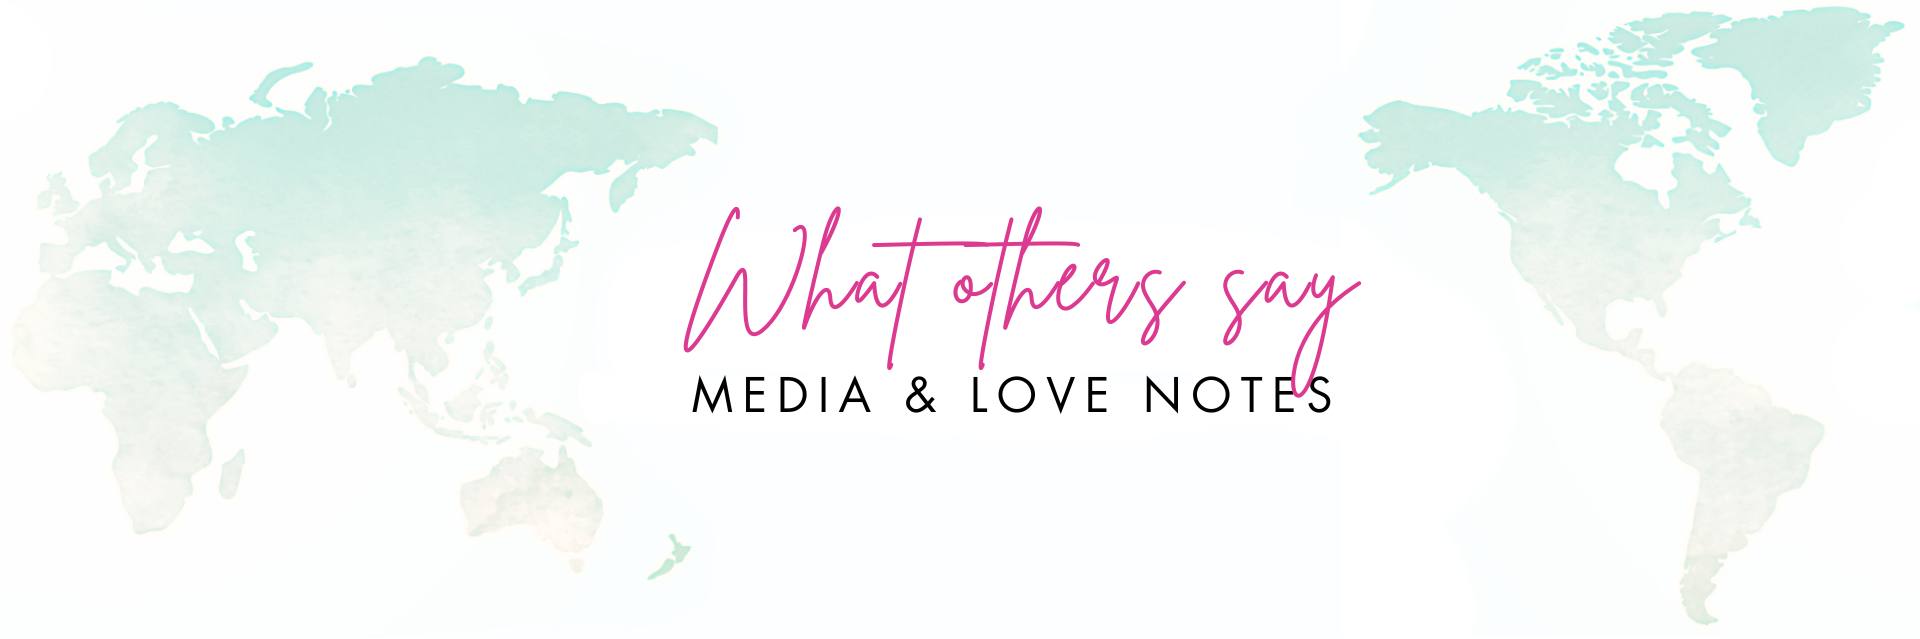 MEDIA & LOVE NOTES CREDENTIALS - Rohtopia